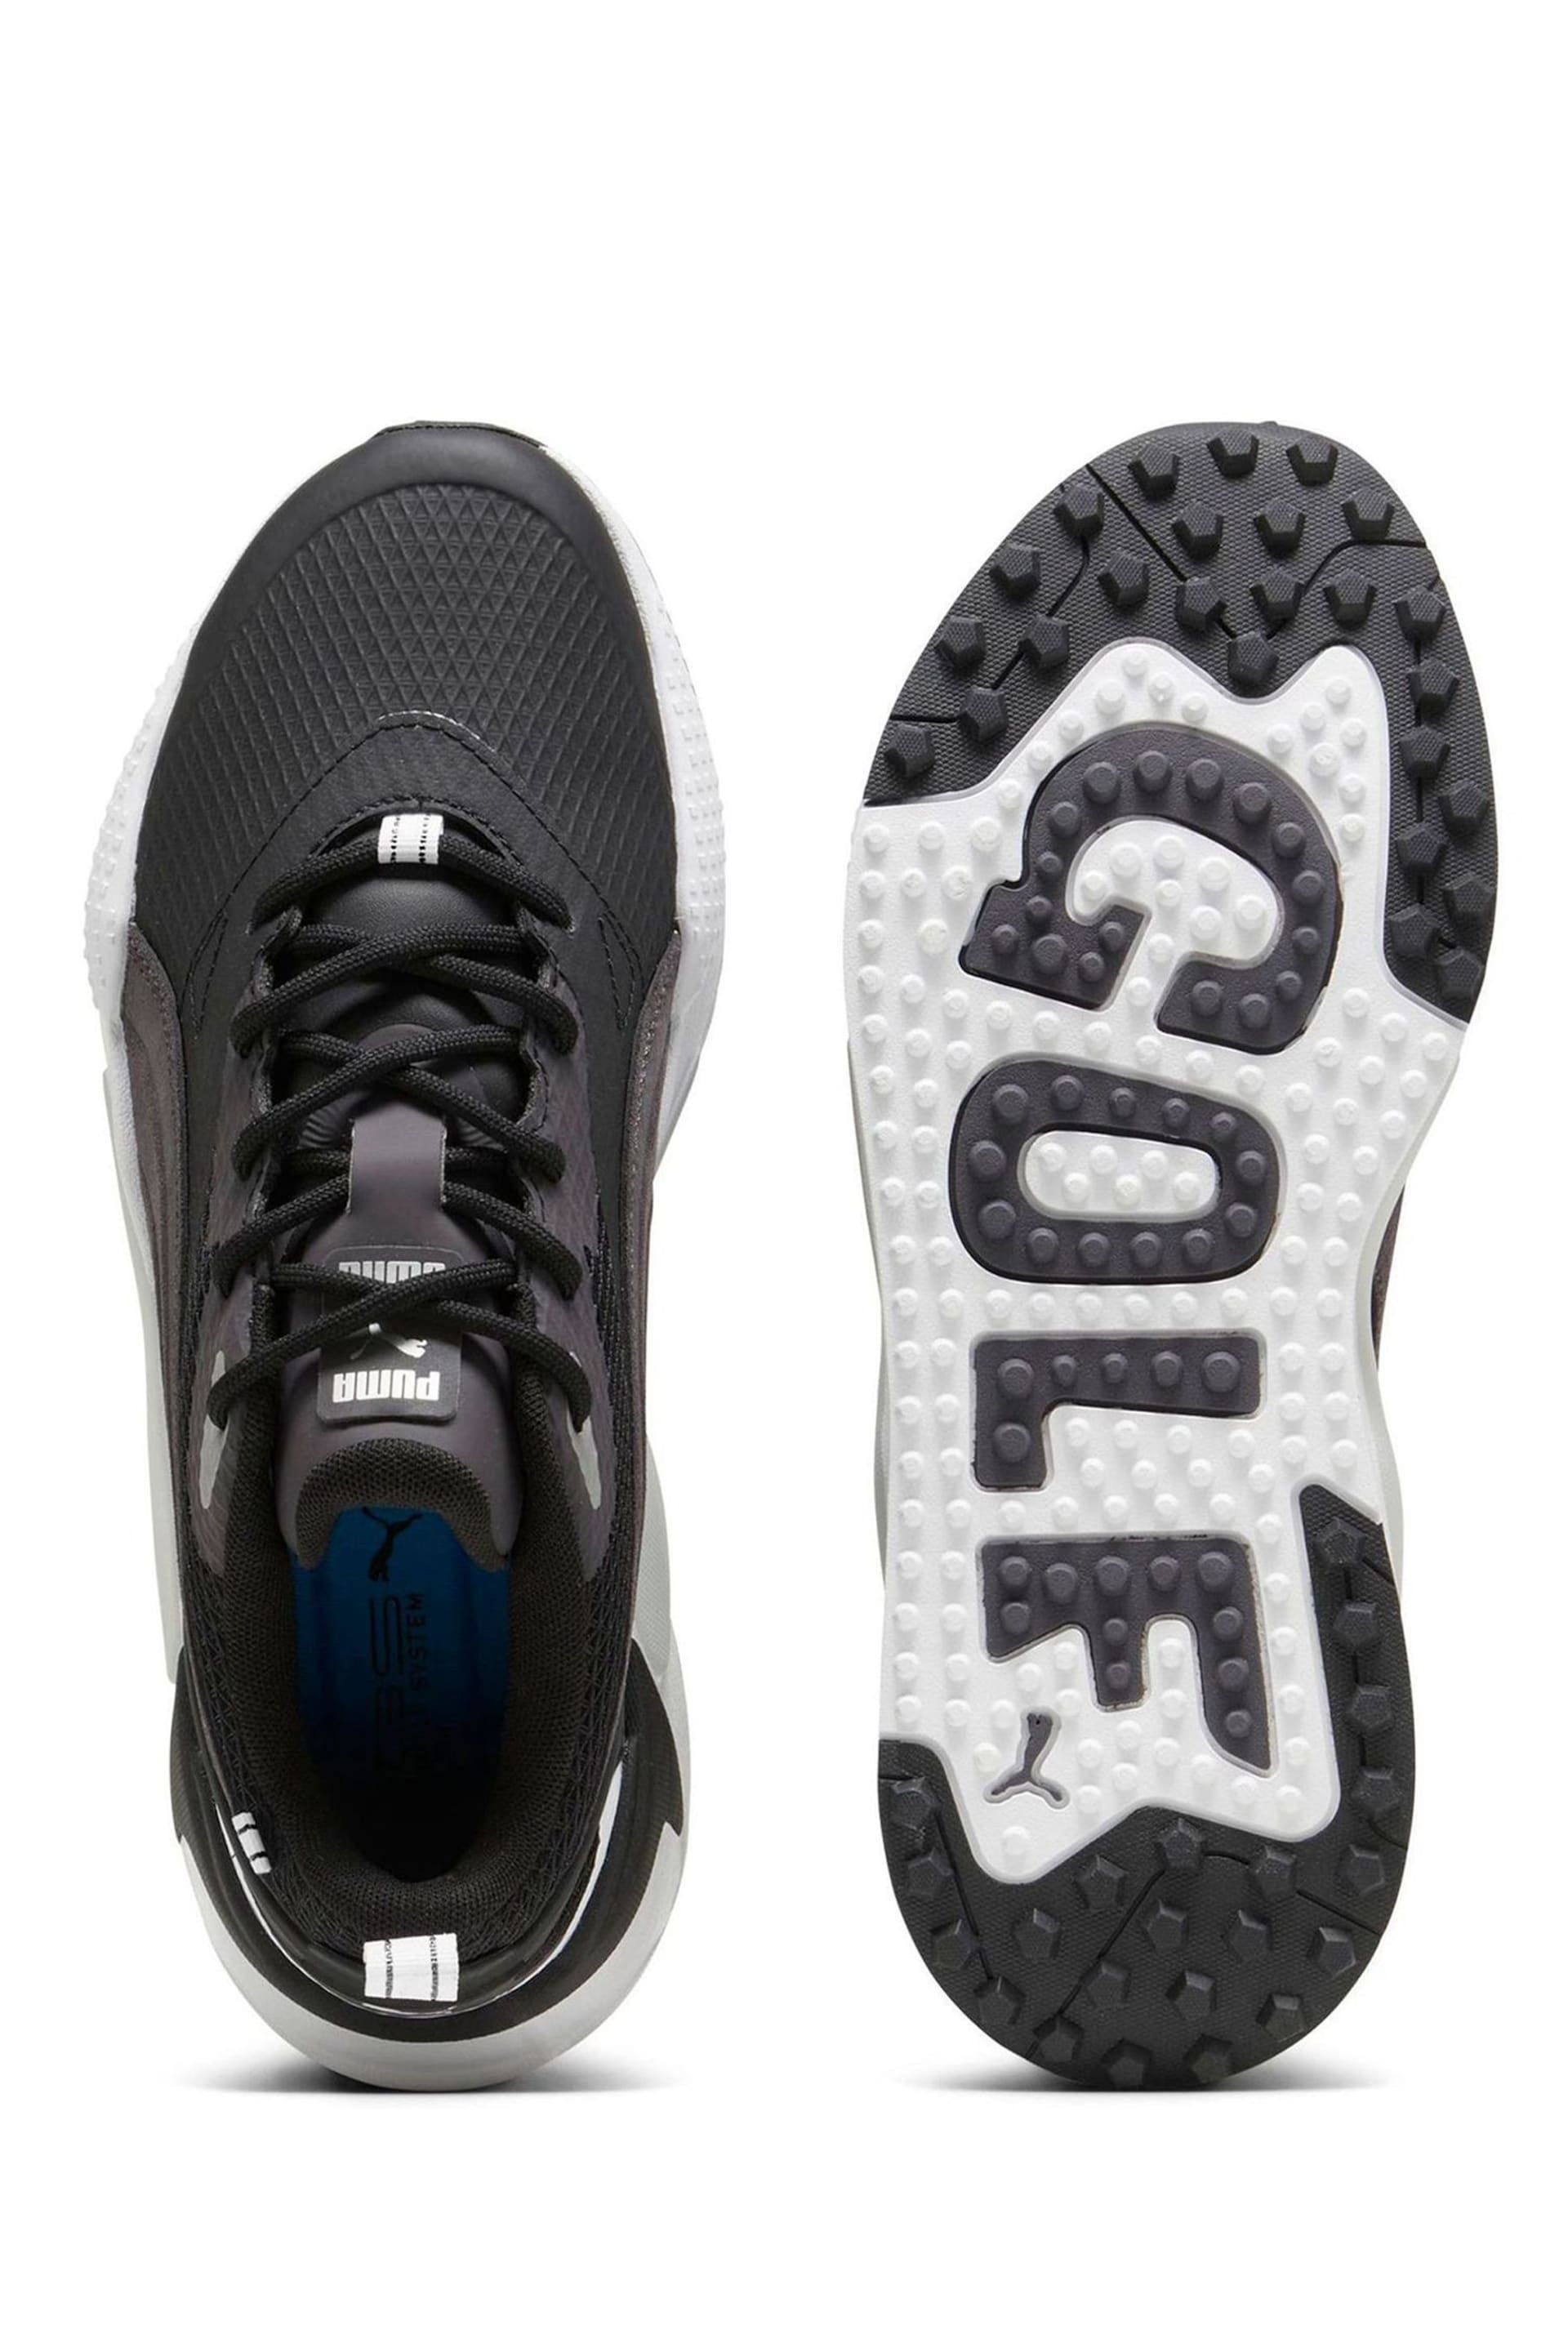 Puma Black Mens GS-X Efekt Golf Shoes - Image 4 of 6